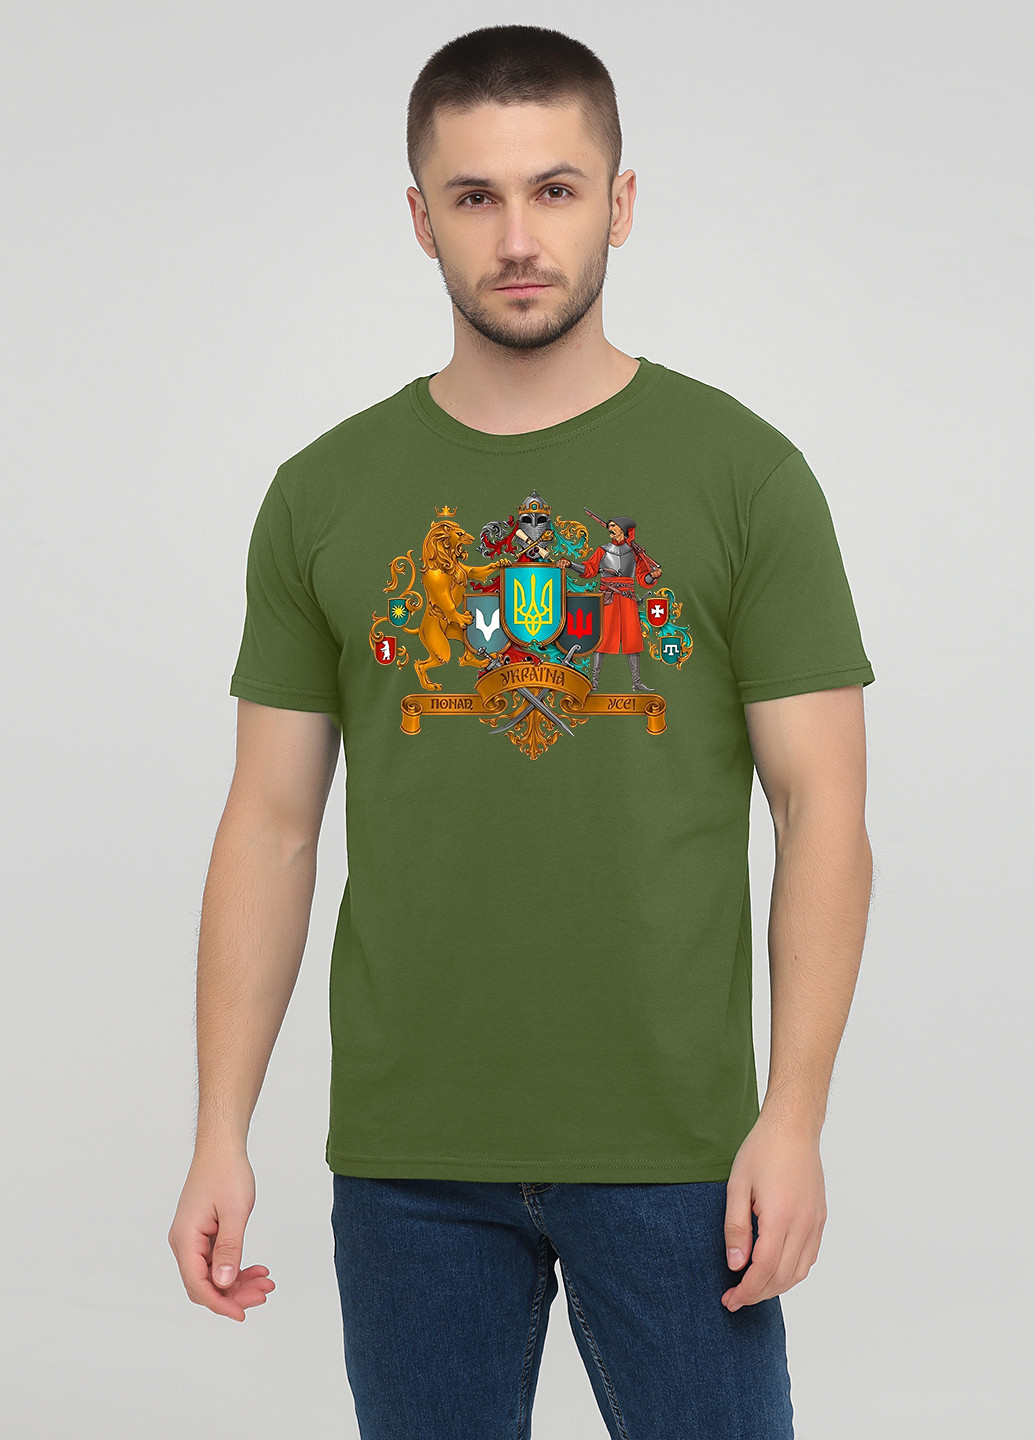 Оливковая футболка мужская 385-24 оливковая с коротким рукавом Malta